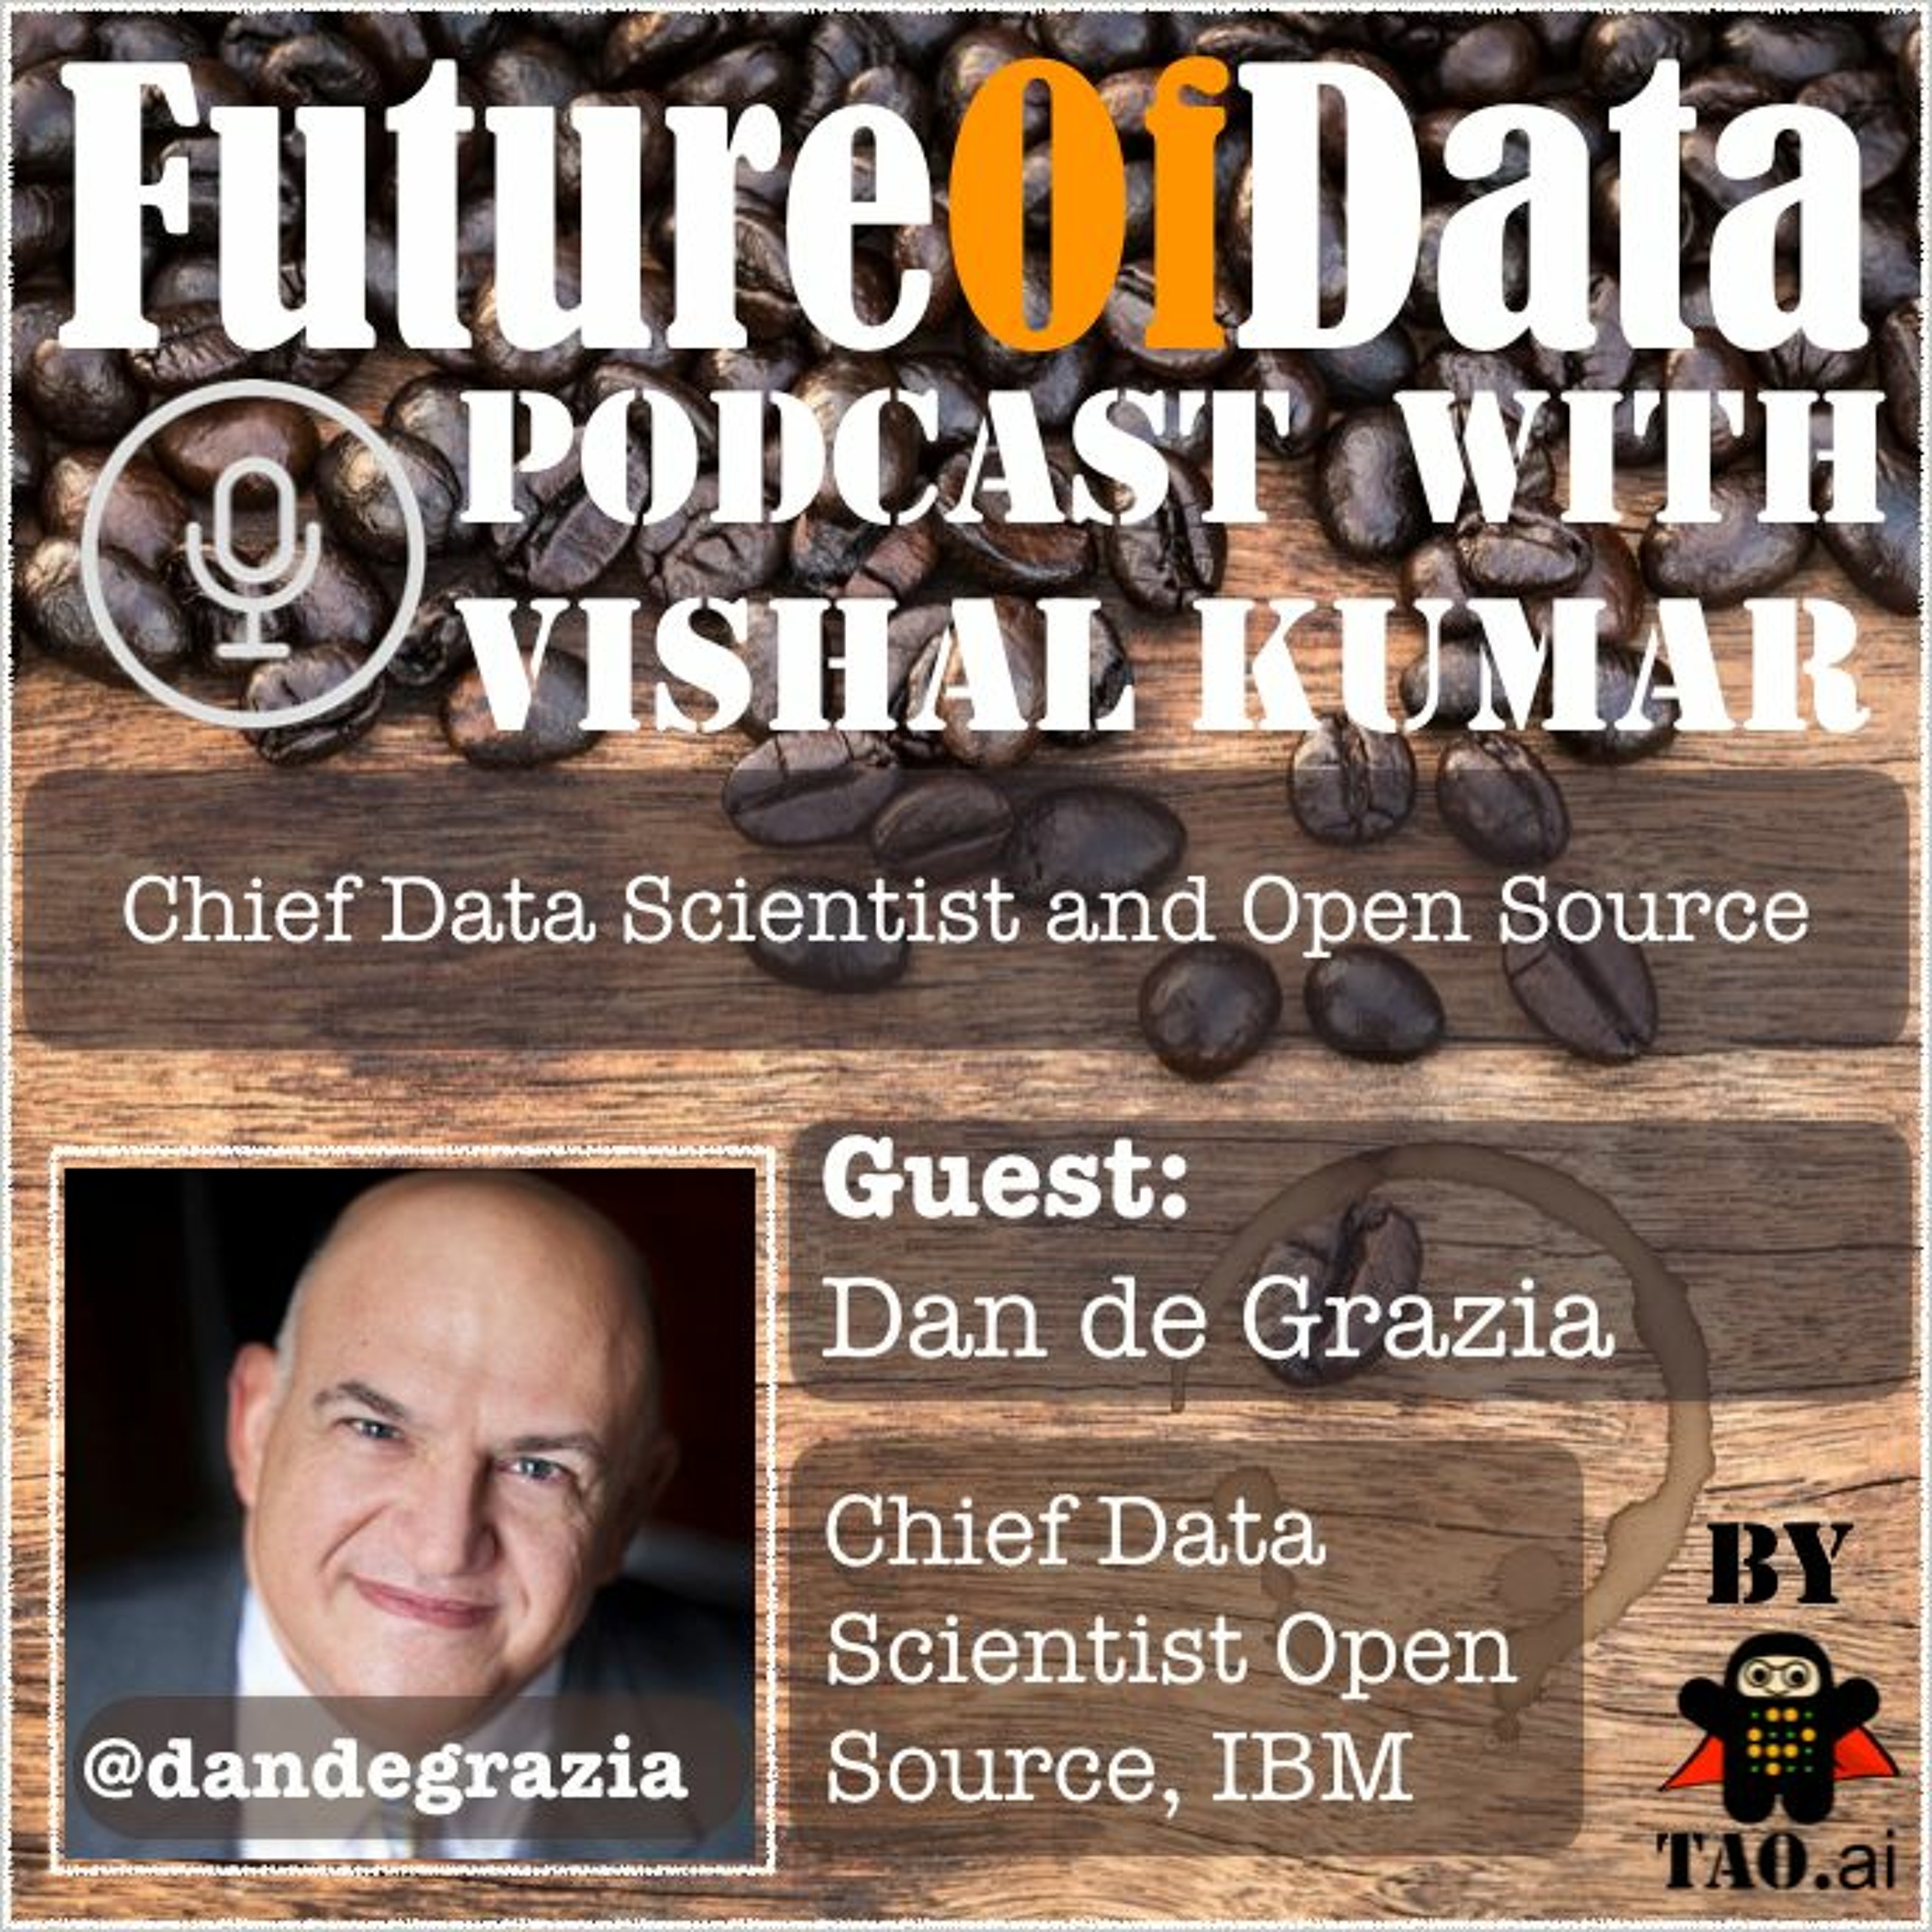 Where Chief Data Scientist & Open Source Meets - @dandegrazia #FutureOfData #Podcast